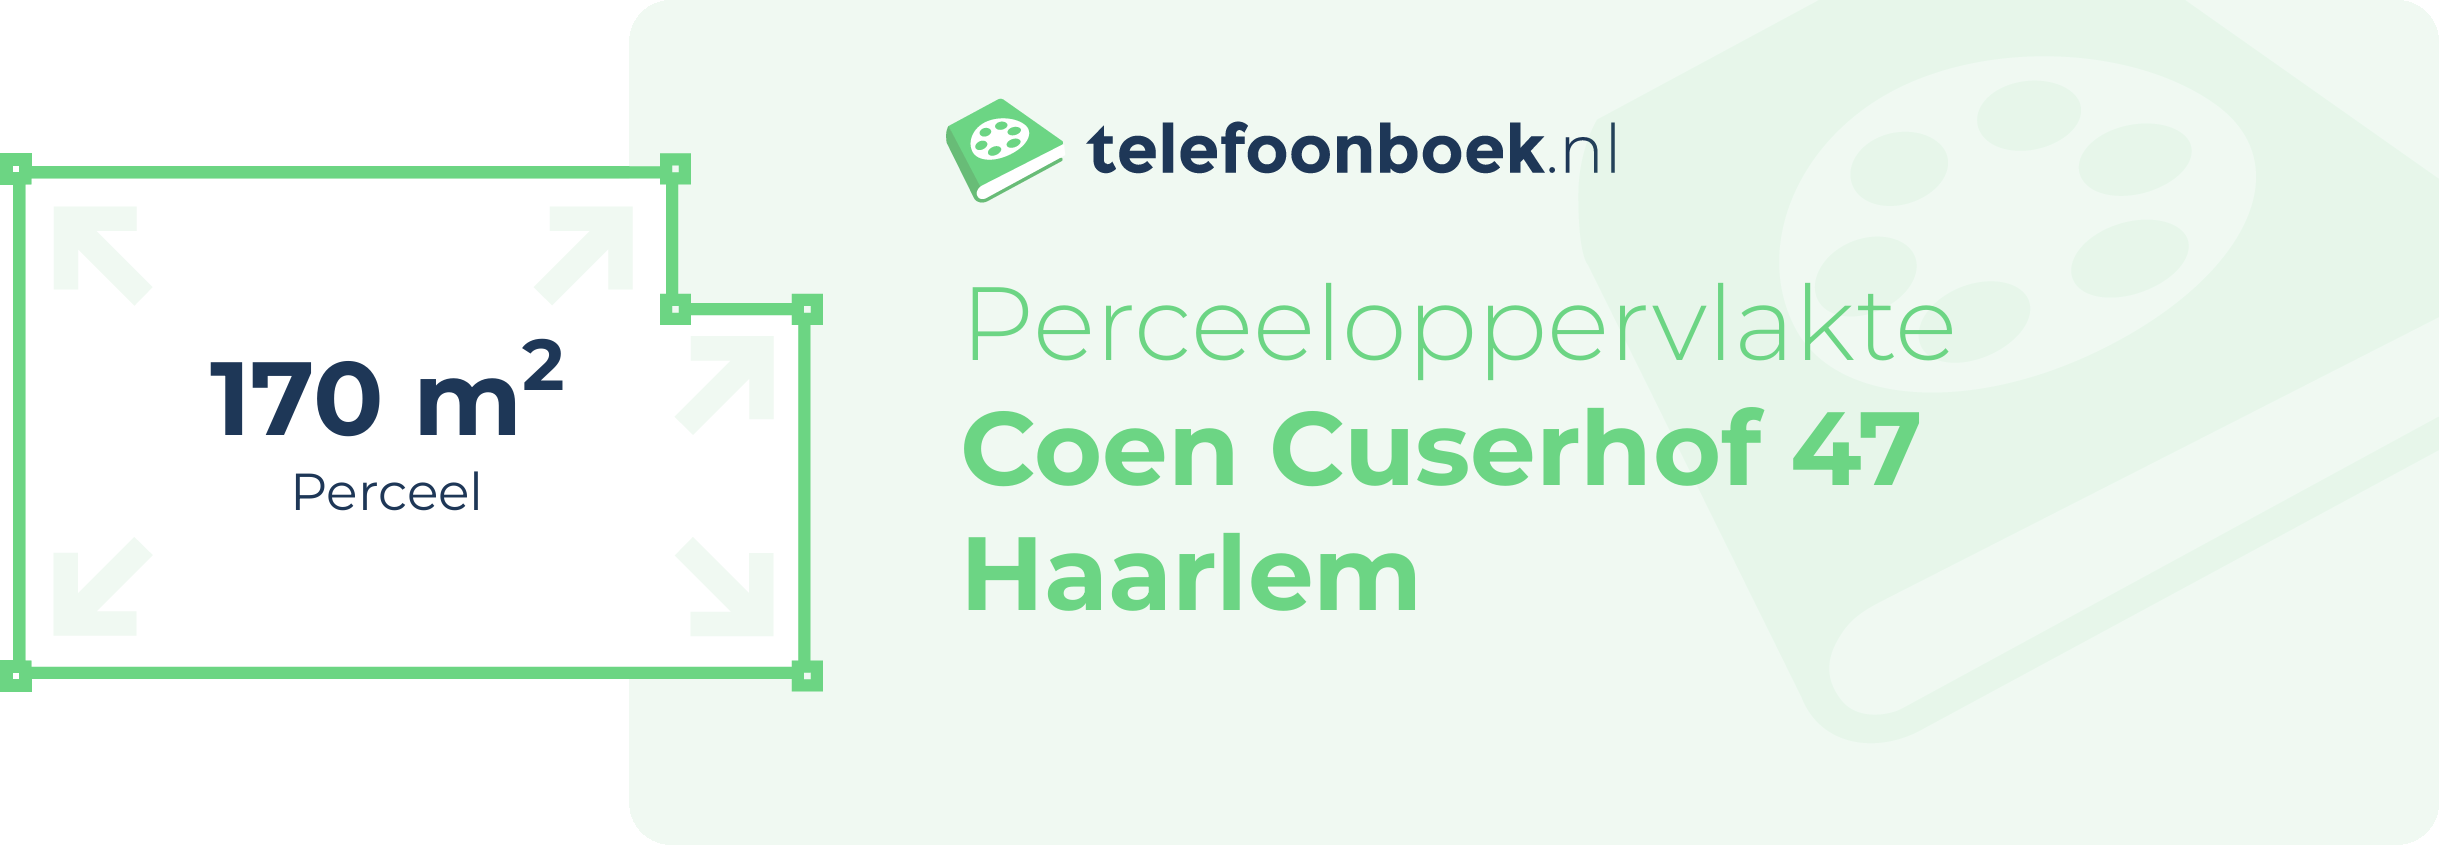 Perceeloppervlakte Coen Cuserhof 47 Haarlem